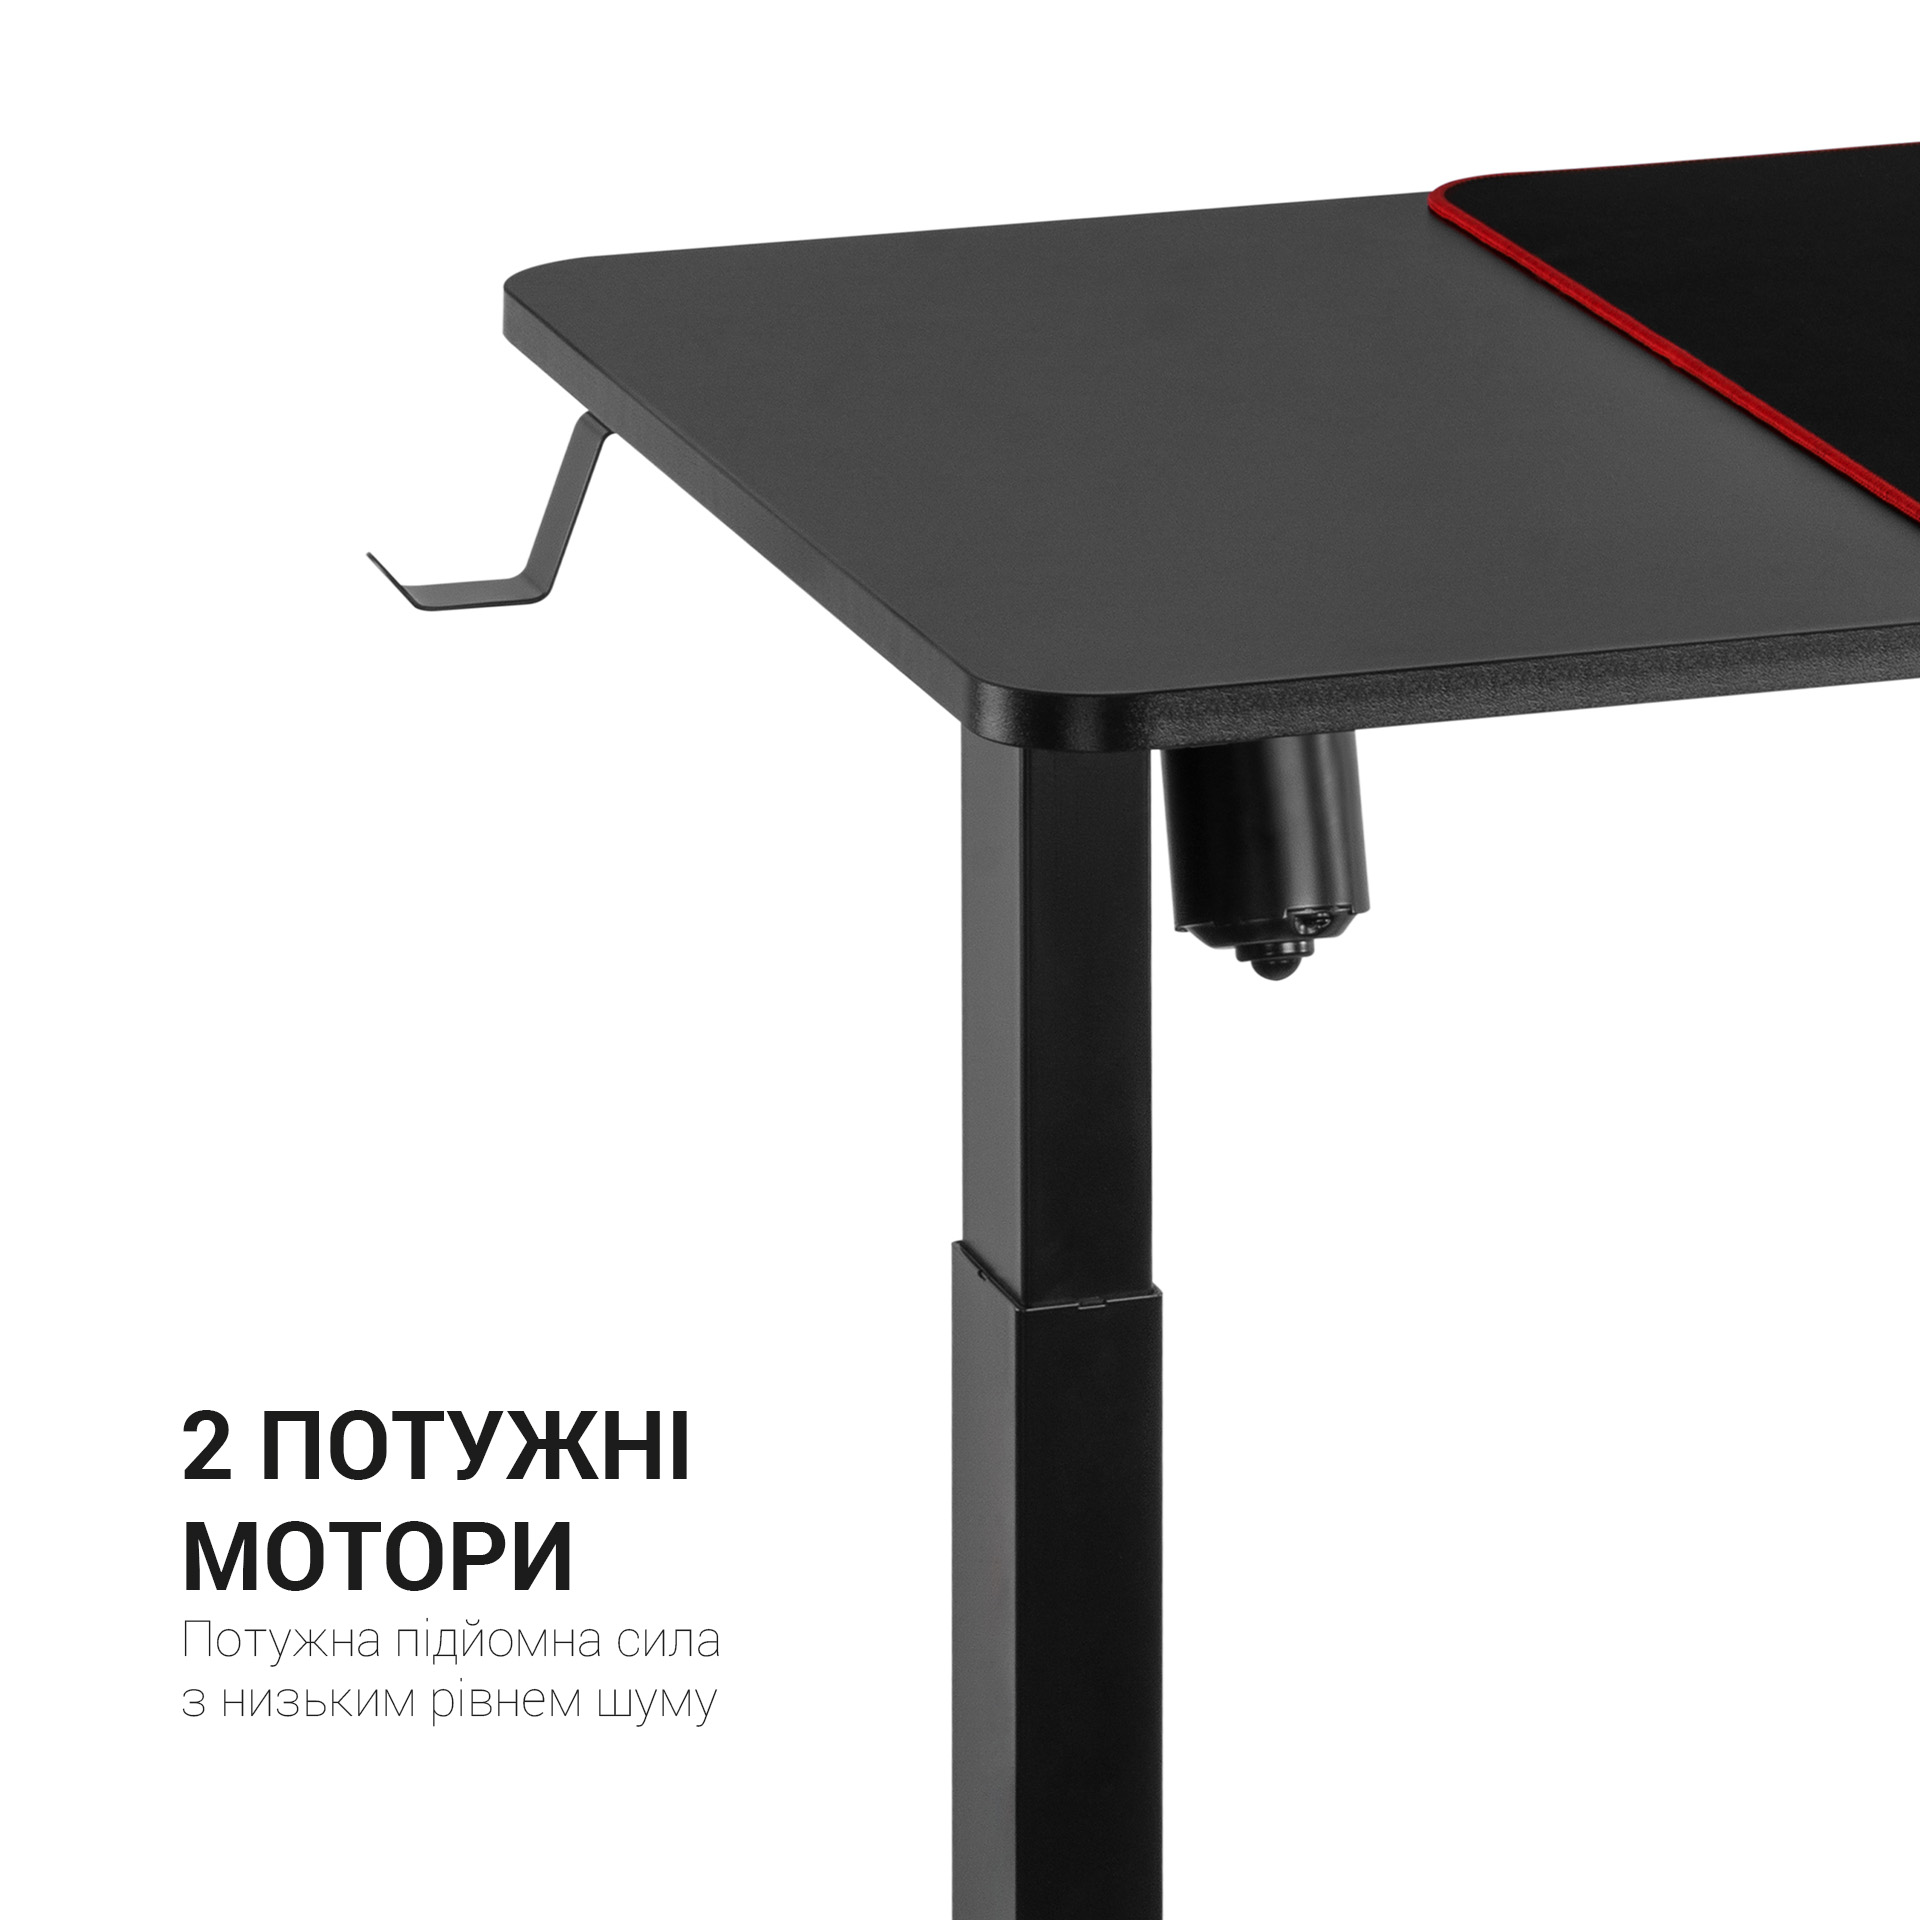 Комп'ютерний стіл OfficePro з електрорегулюванням висоти чорний (ODE714) - фото 6